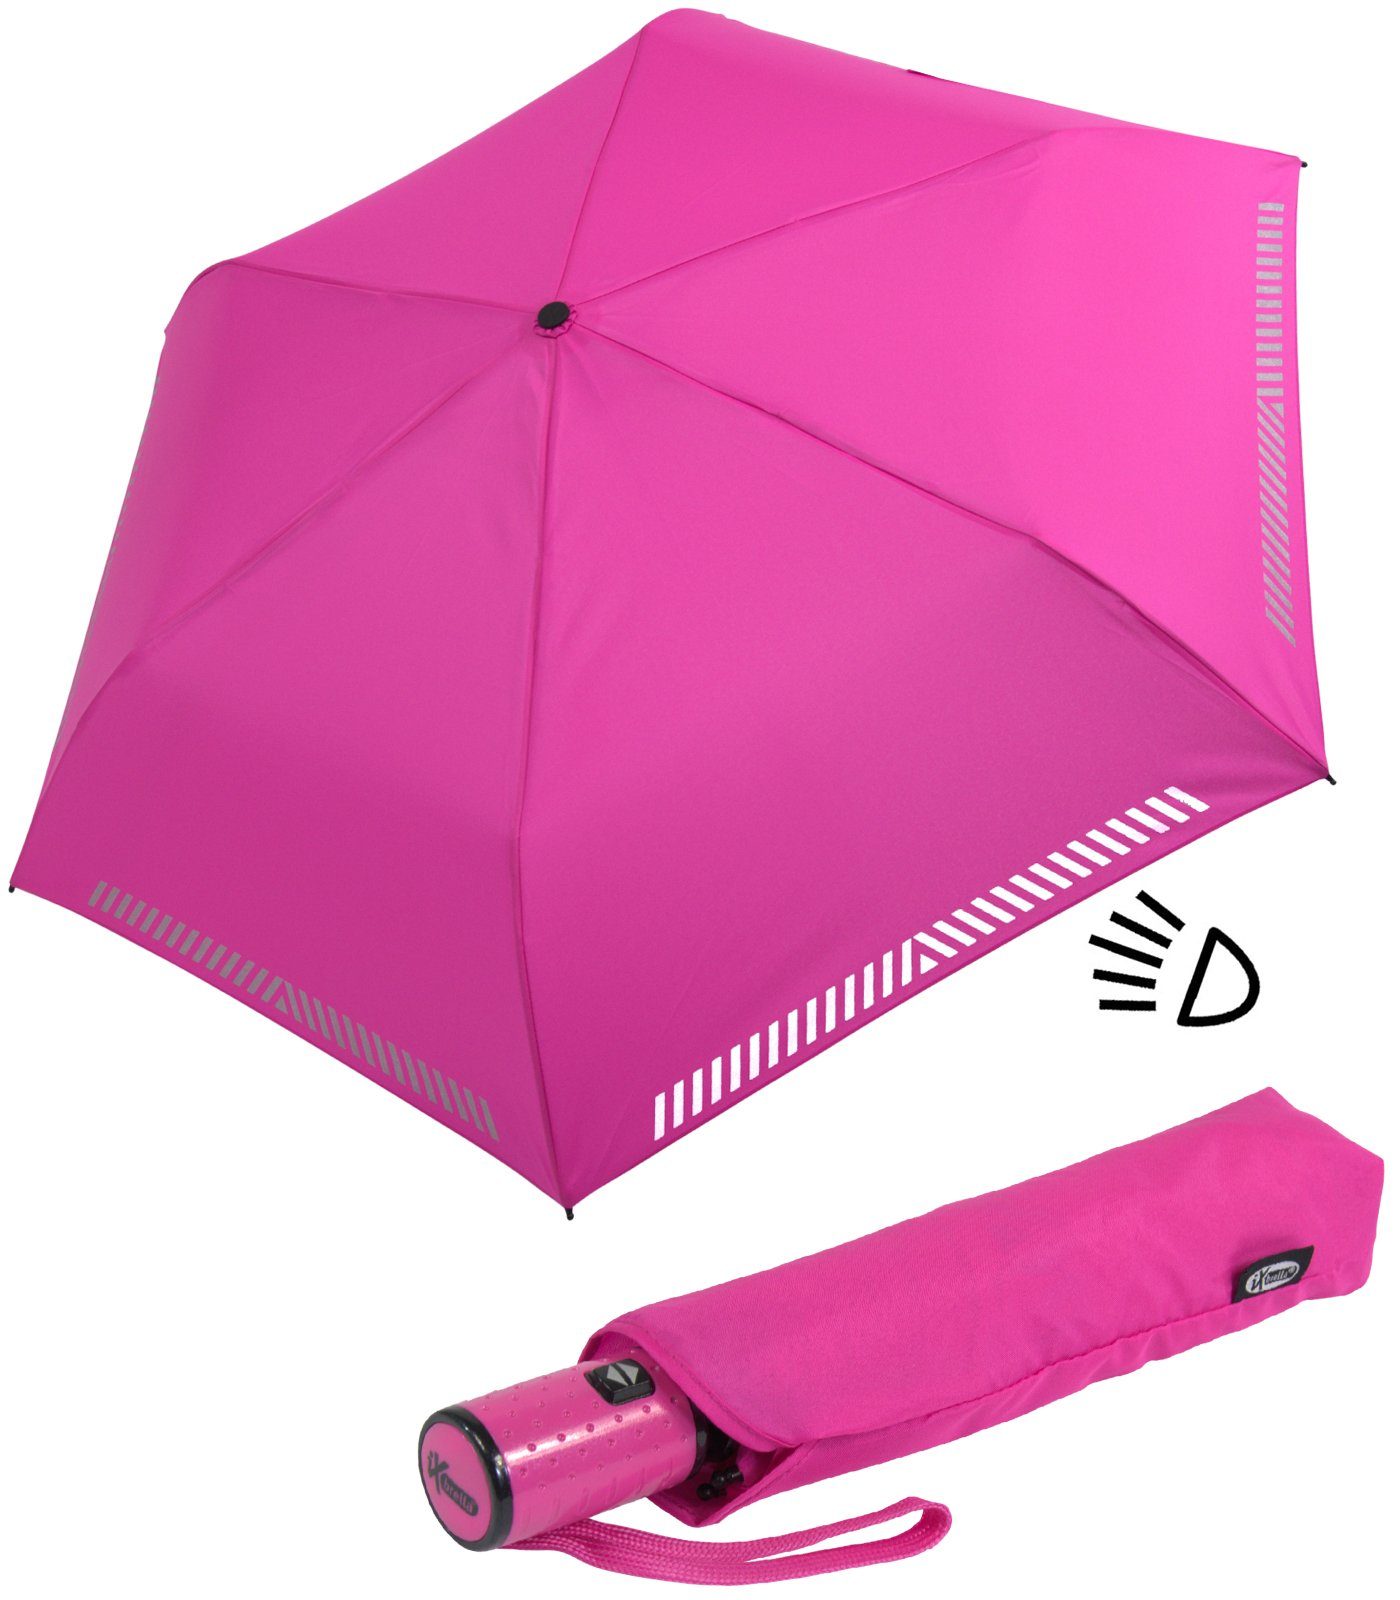 iX-brella Taschenregenschirm Kinderschirm mit Auf-Zu-Automatik, reflektierend, Sicherheit durch Reflex-Streifen - neon pink